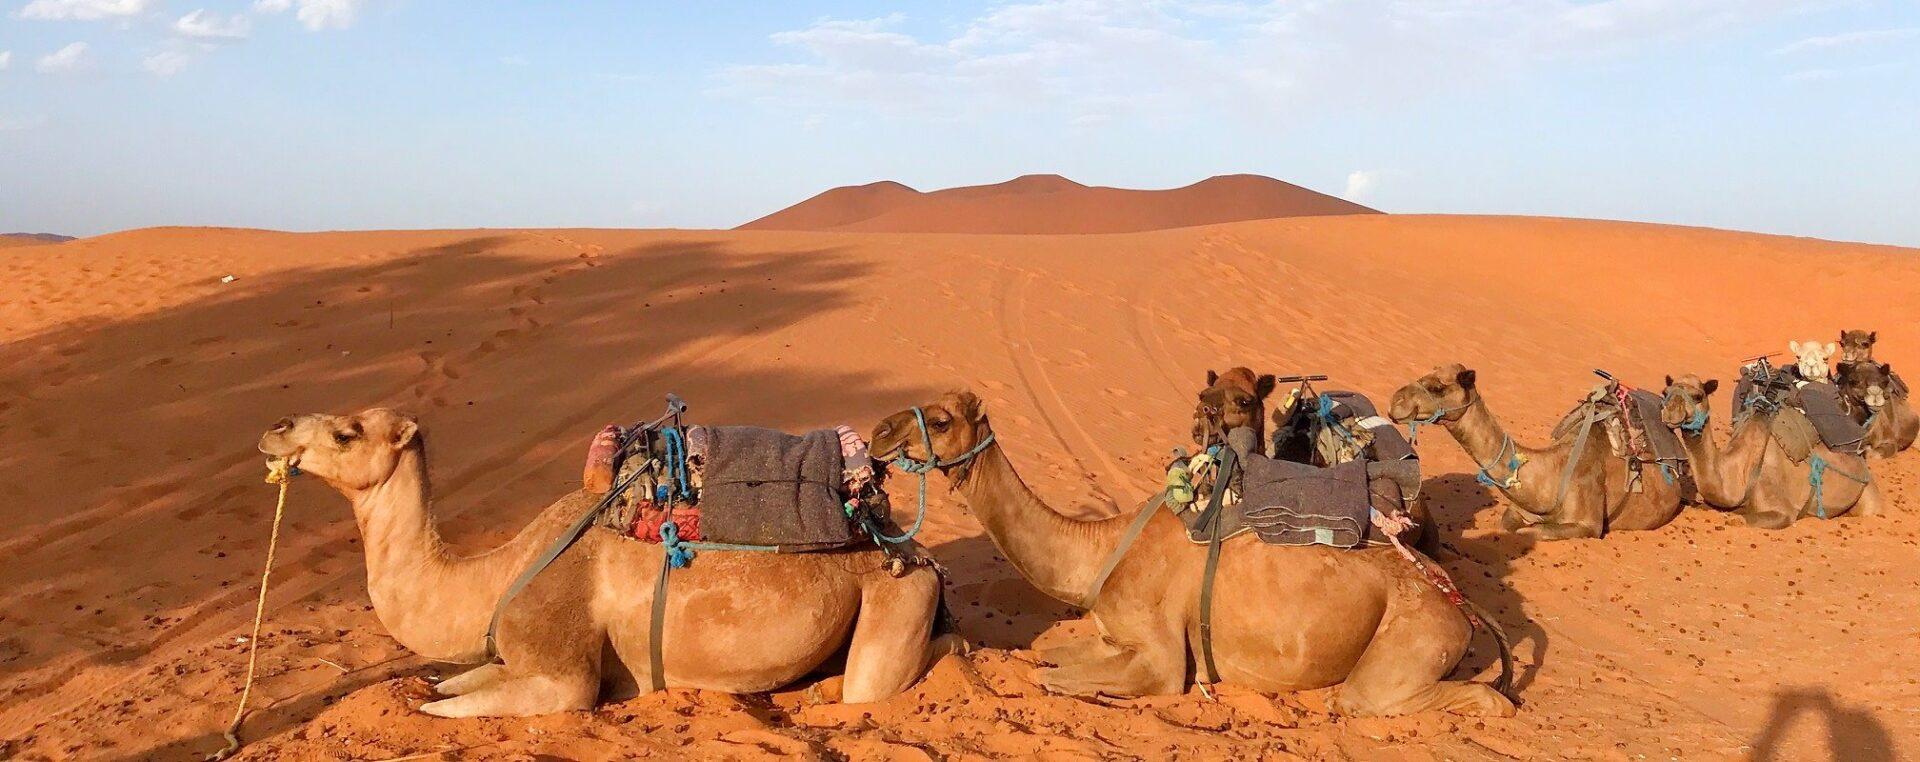 Ruta de 4 dias desde Marrakech al desierto de Merzouga